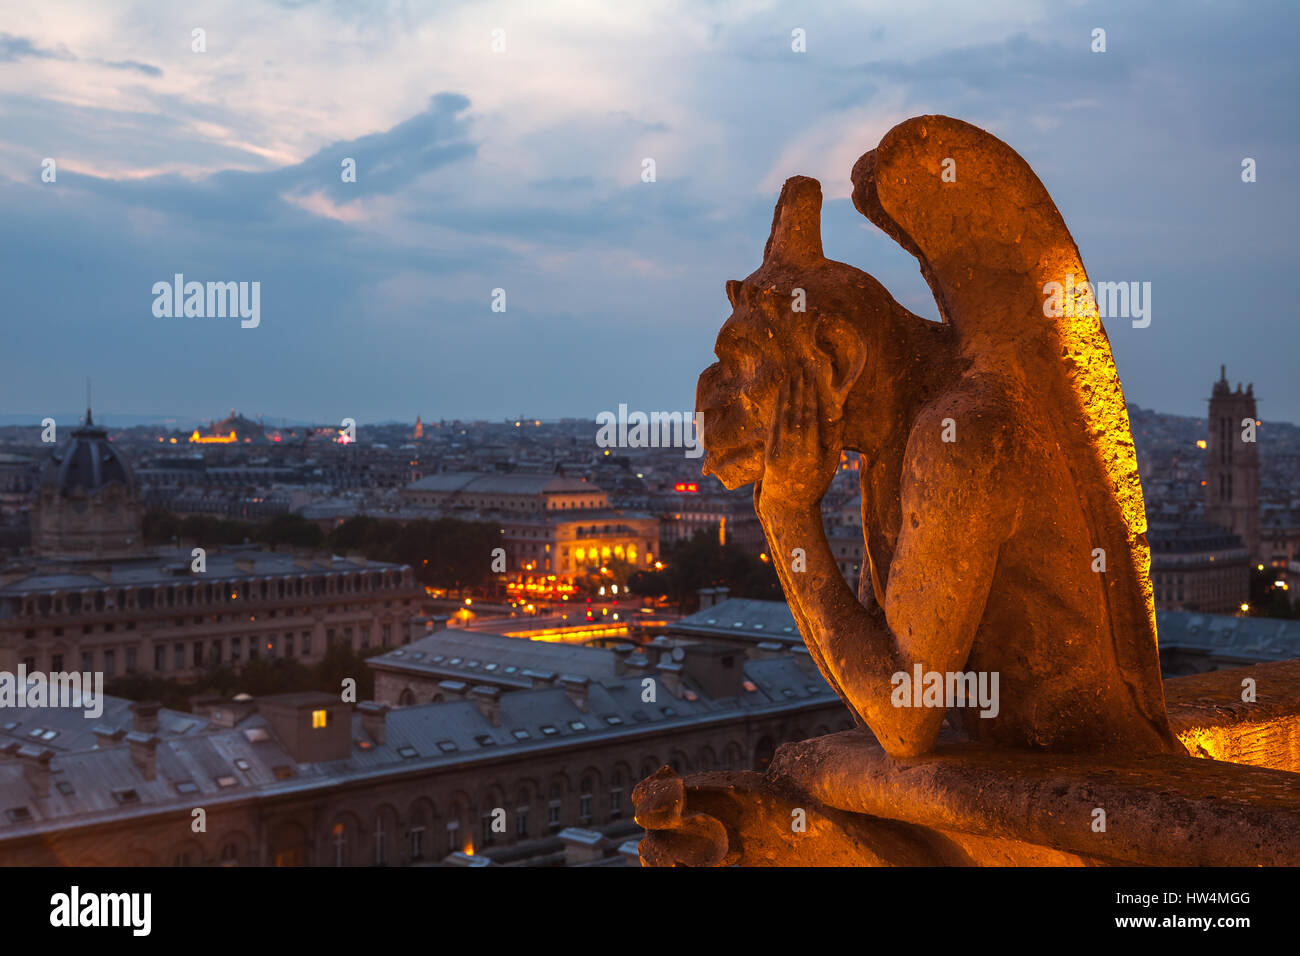 PARIS - Juli 15,2014: Gargoyle auf dem Dach der Kathedrale Notre Dame, Paris. Nacht-Blick vom Dach von Notre-Dame de Pari. 15 Juli, Paris, Frankreich. Stockfoto